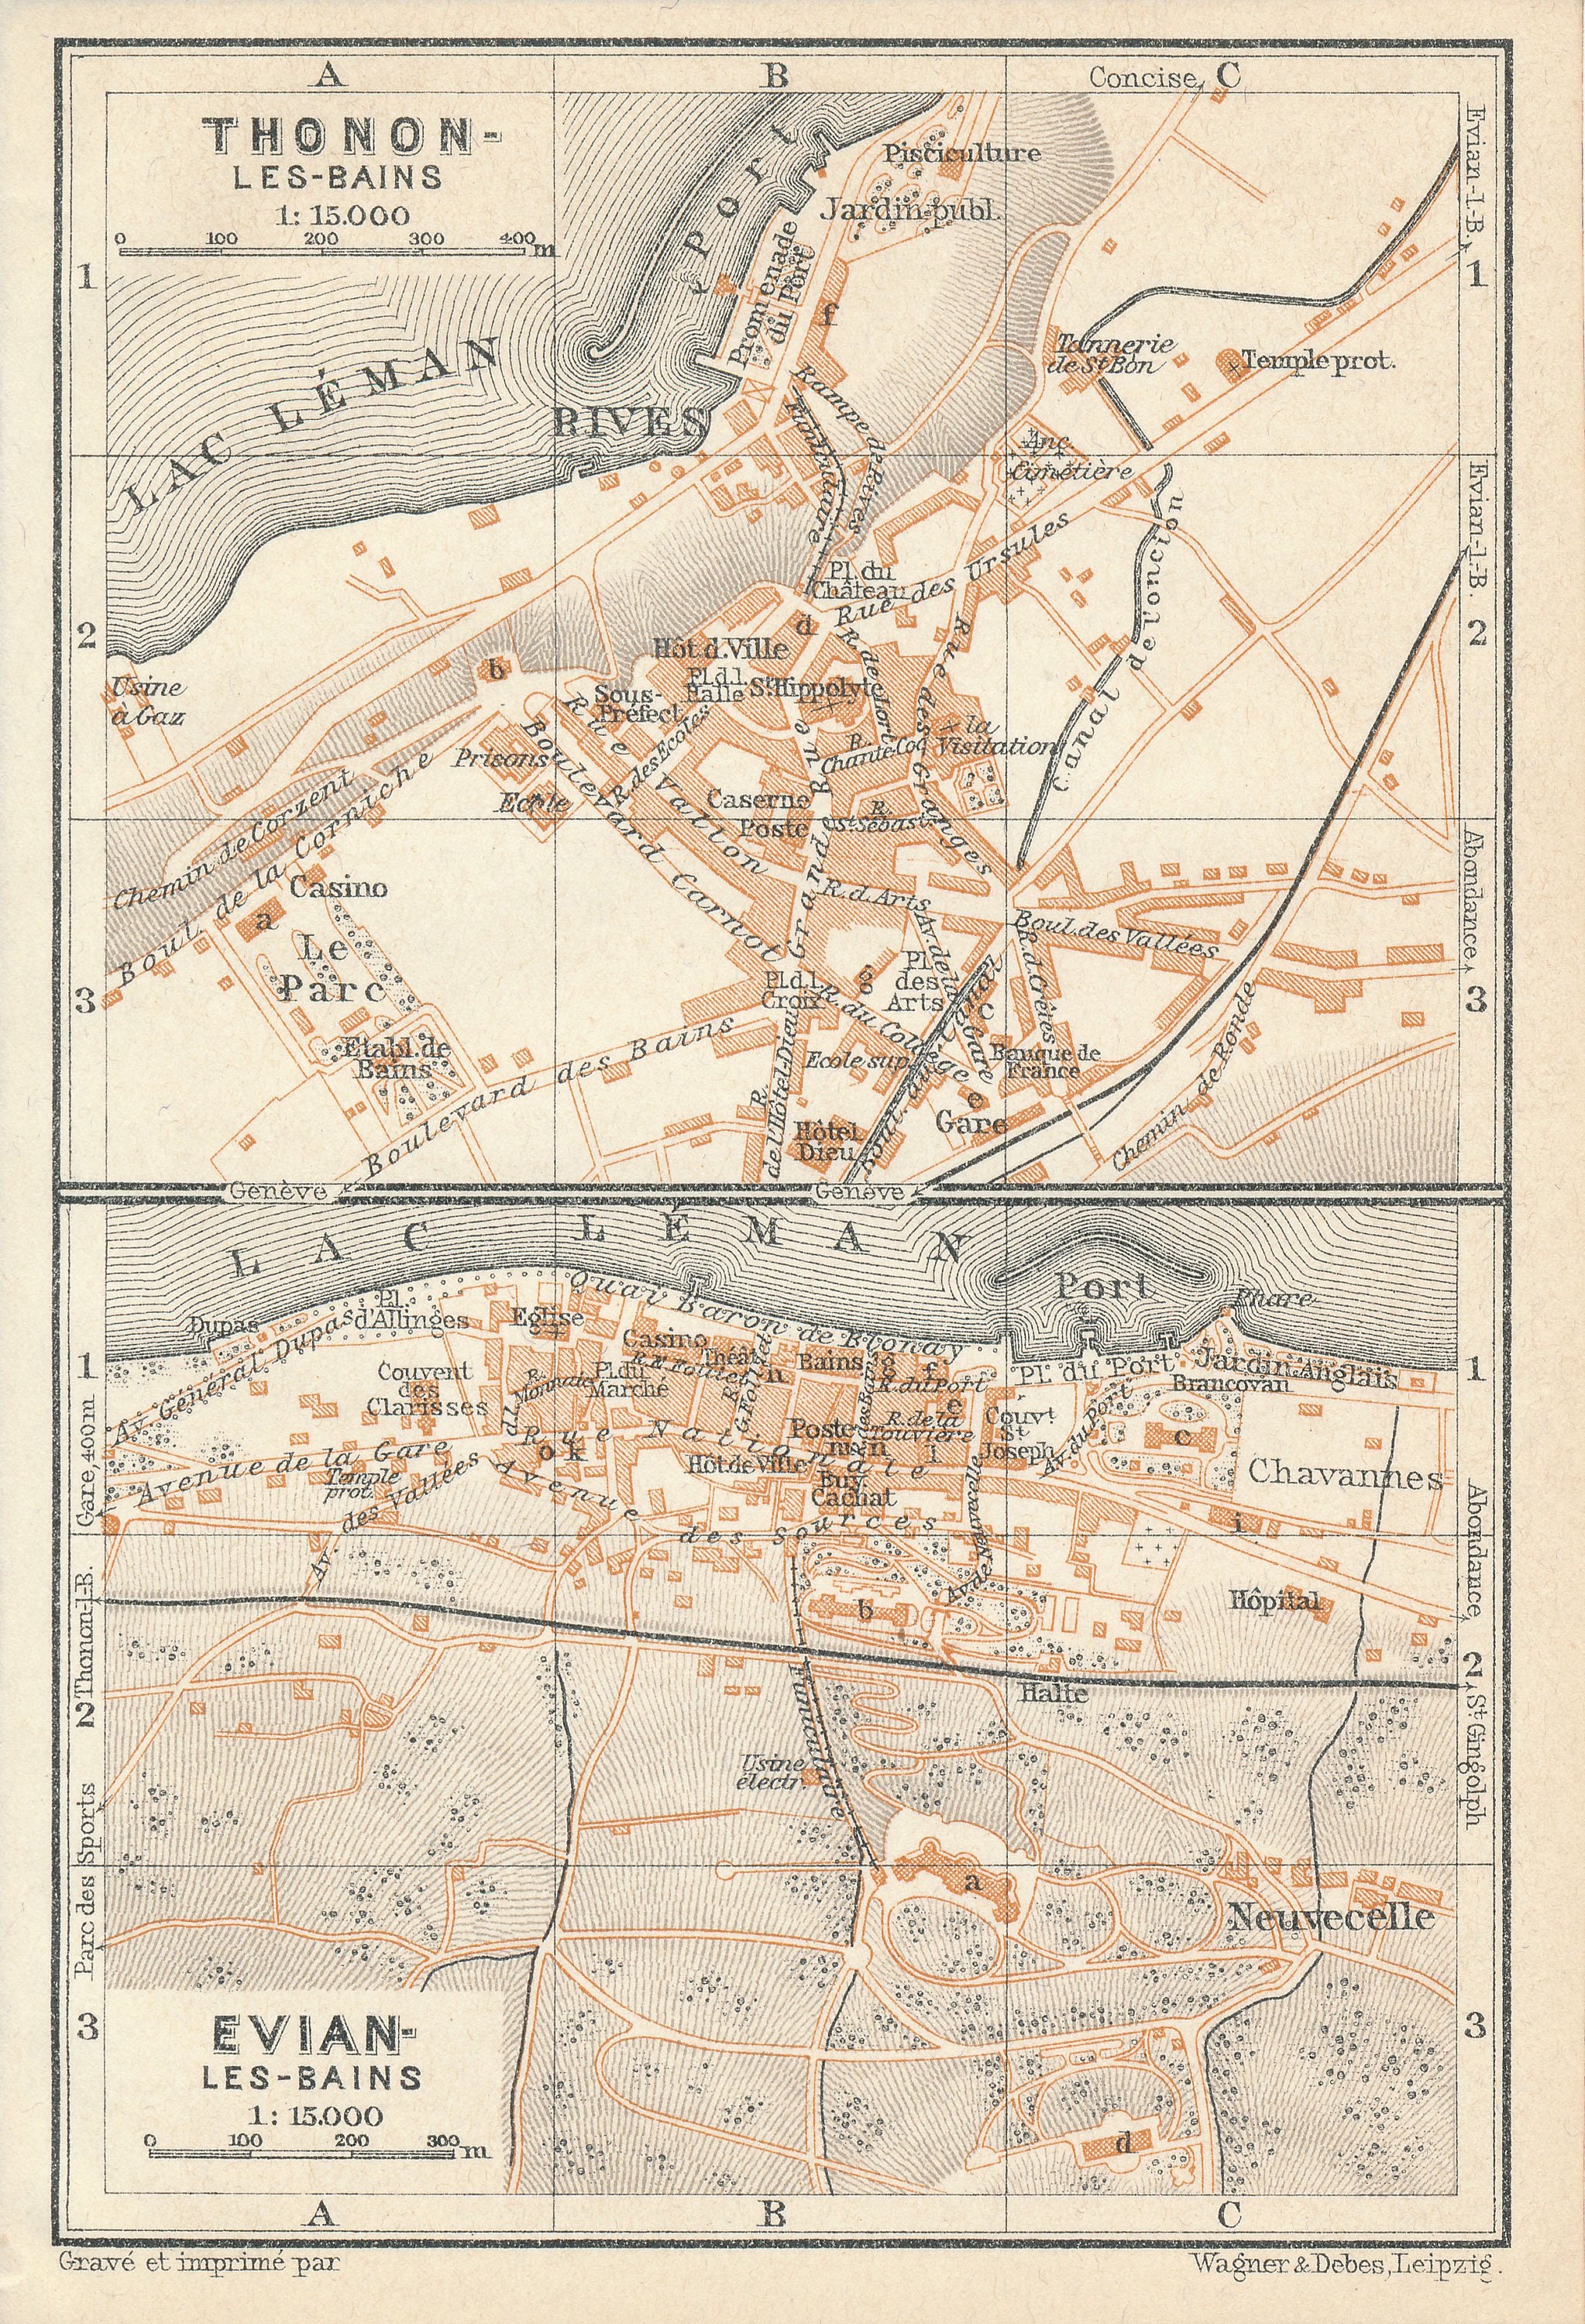 1914 Evian-Les-Bains & Thonon-Les-Bains France Antique Map | Etsy